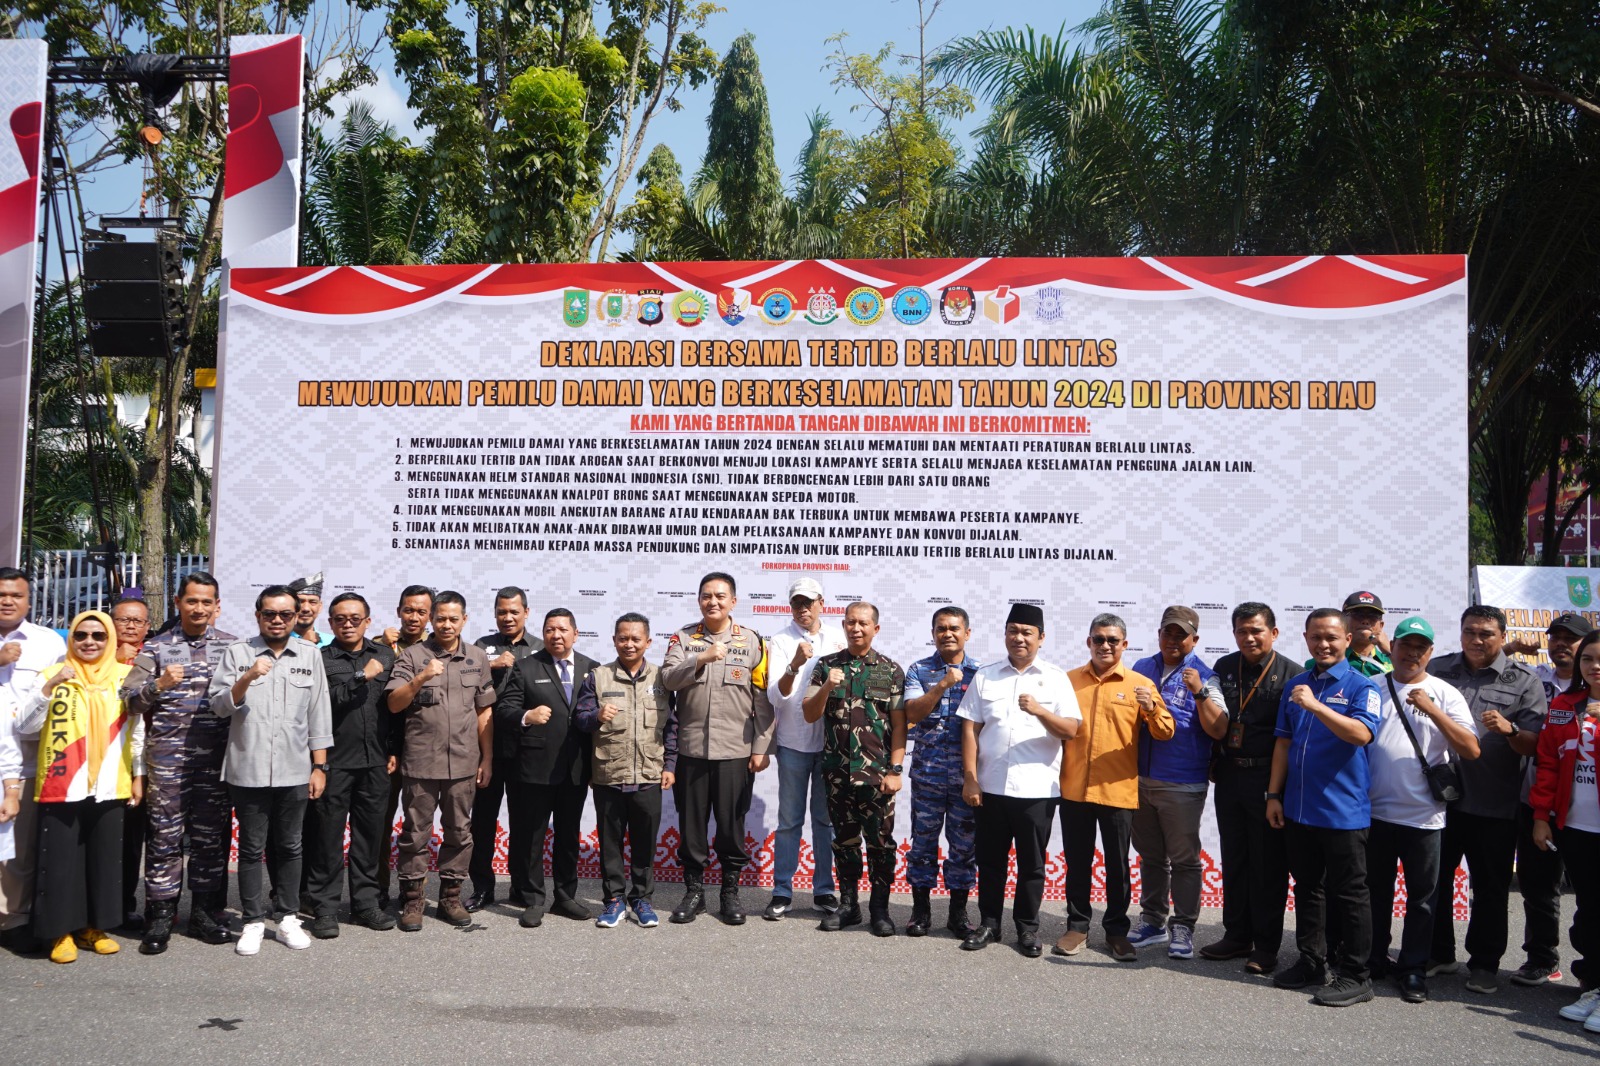 Kapolda Riau Deklarasi Bersama Tertib Berlalulintas Dalam Mewujudkan Pemilu Damai yang berkeselamatan